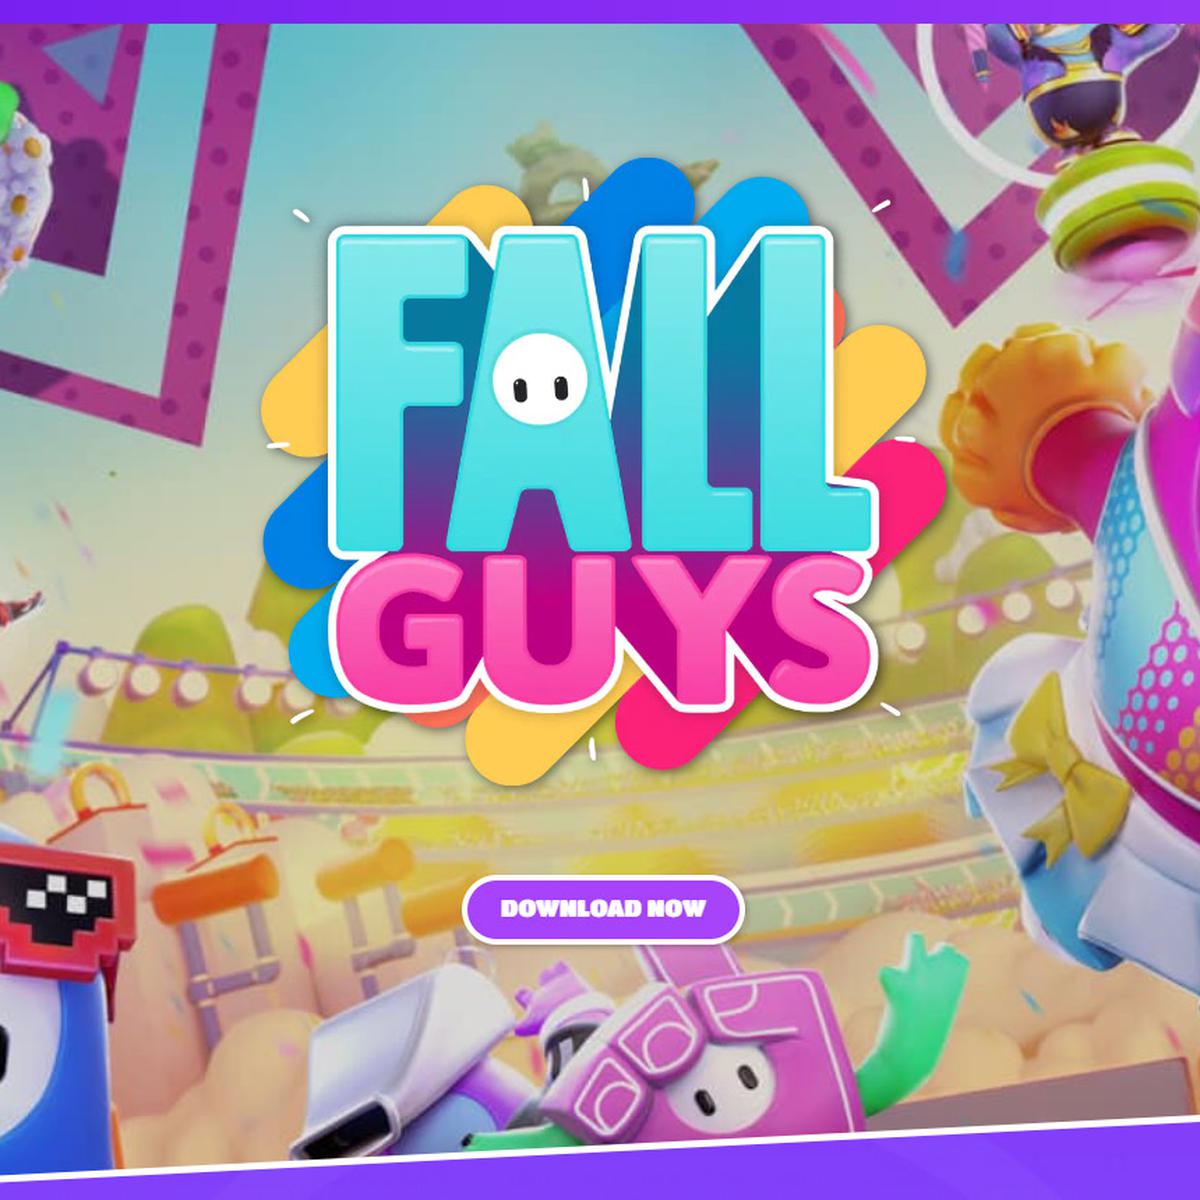 Fall Guys: Cómo descargar GRATIS en PC, PS4, PS5, Xbox y Switch